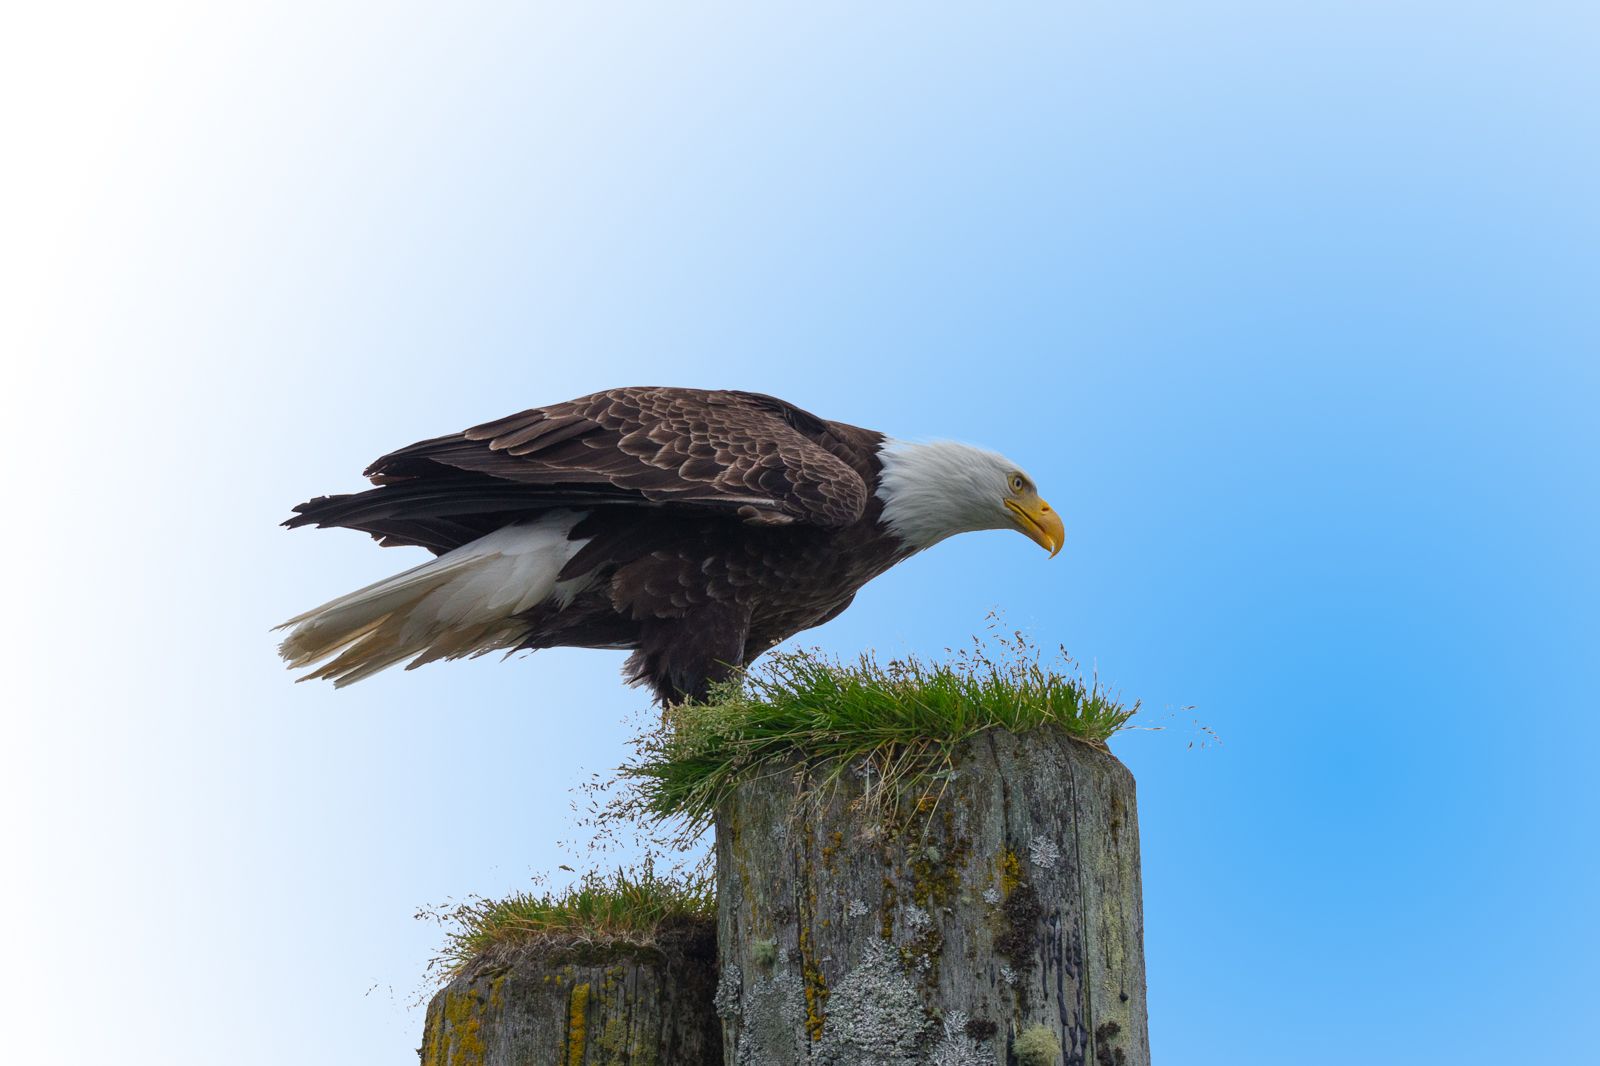 Aquila pescatrice testa bianca - Haliaeetus leucocephalus - Knight Inlet  British Columbia Canada